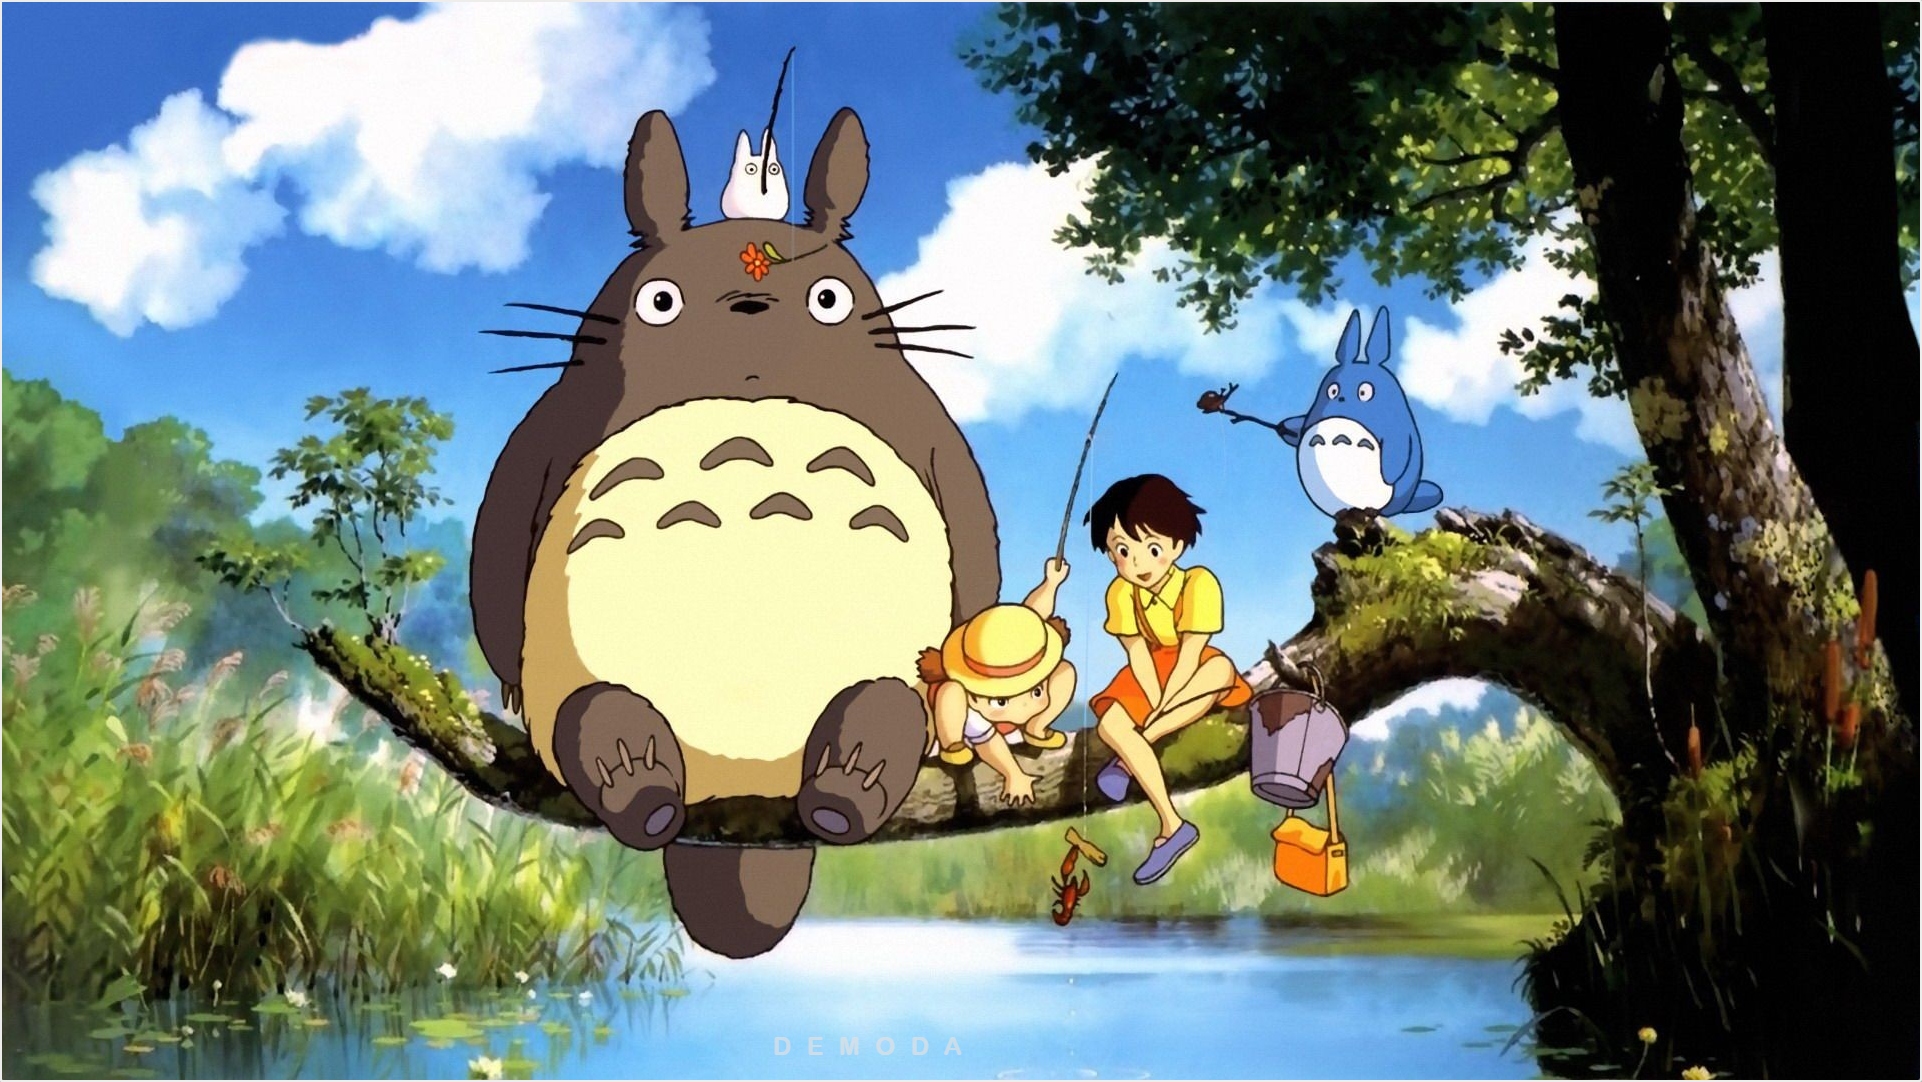 Ai cũng yêu thích Totoro phải không? Hãy để hình nền Totoro mang đến sự ngọt ngào và tình cảm cho màn hình của bạn ngay bây giờ.